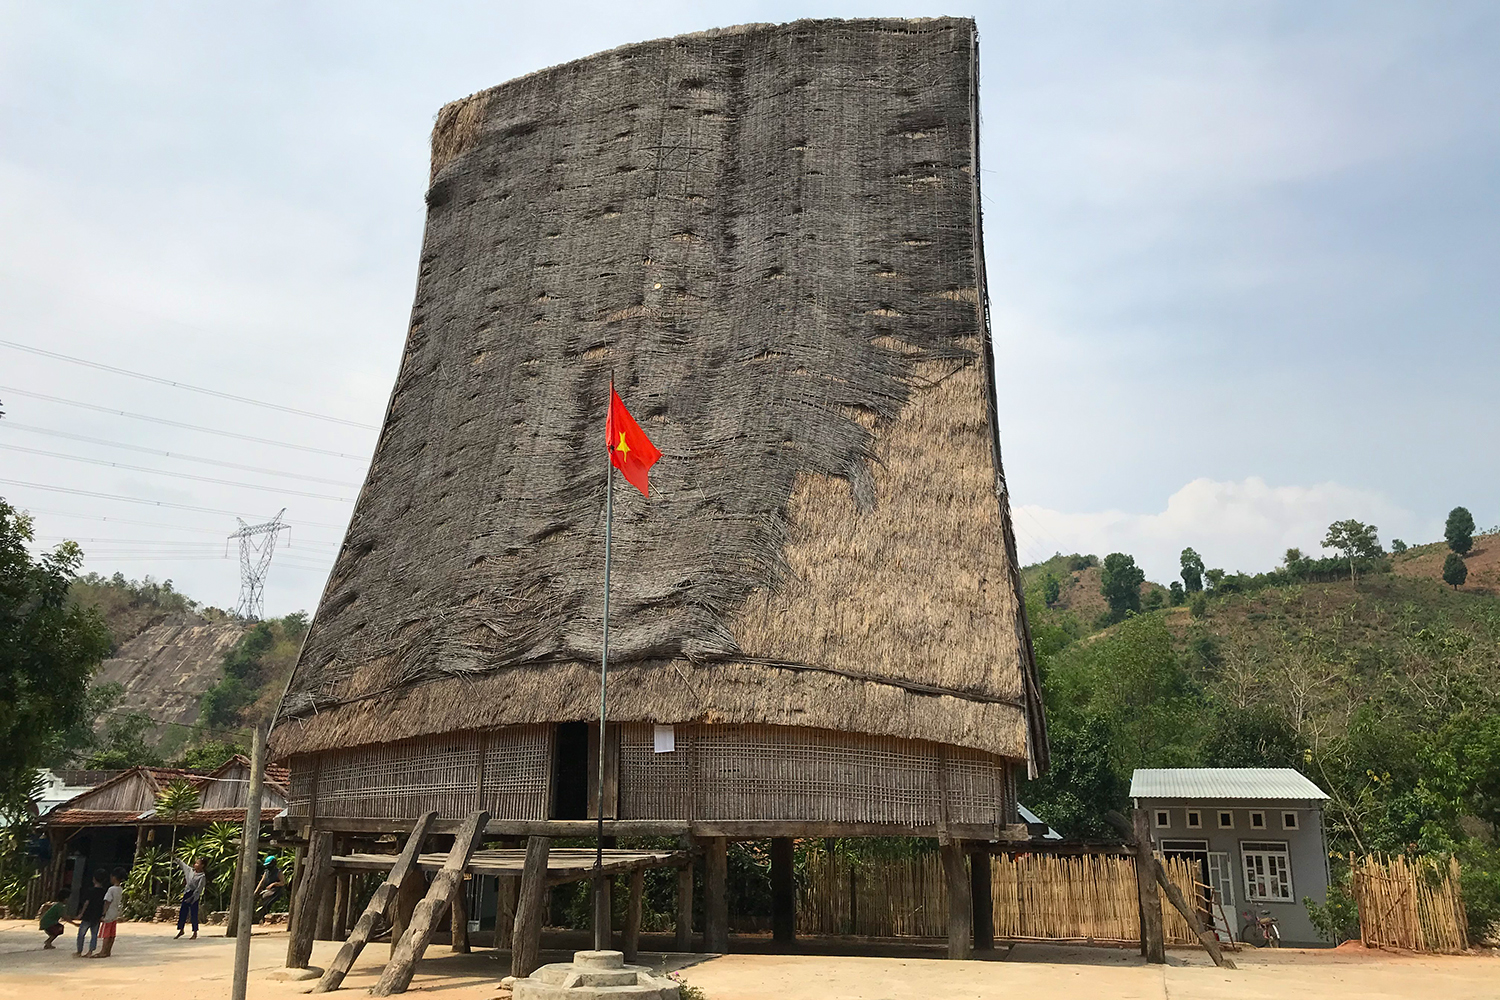 Đến làng cổ Kon K’Tu chạm khẽ vào văn hóa Tây Nguyên